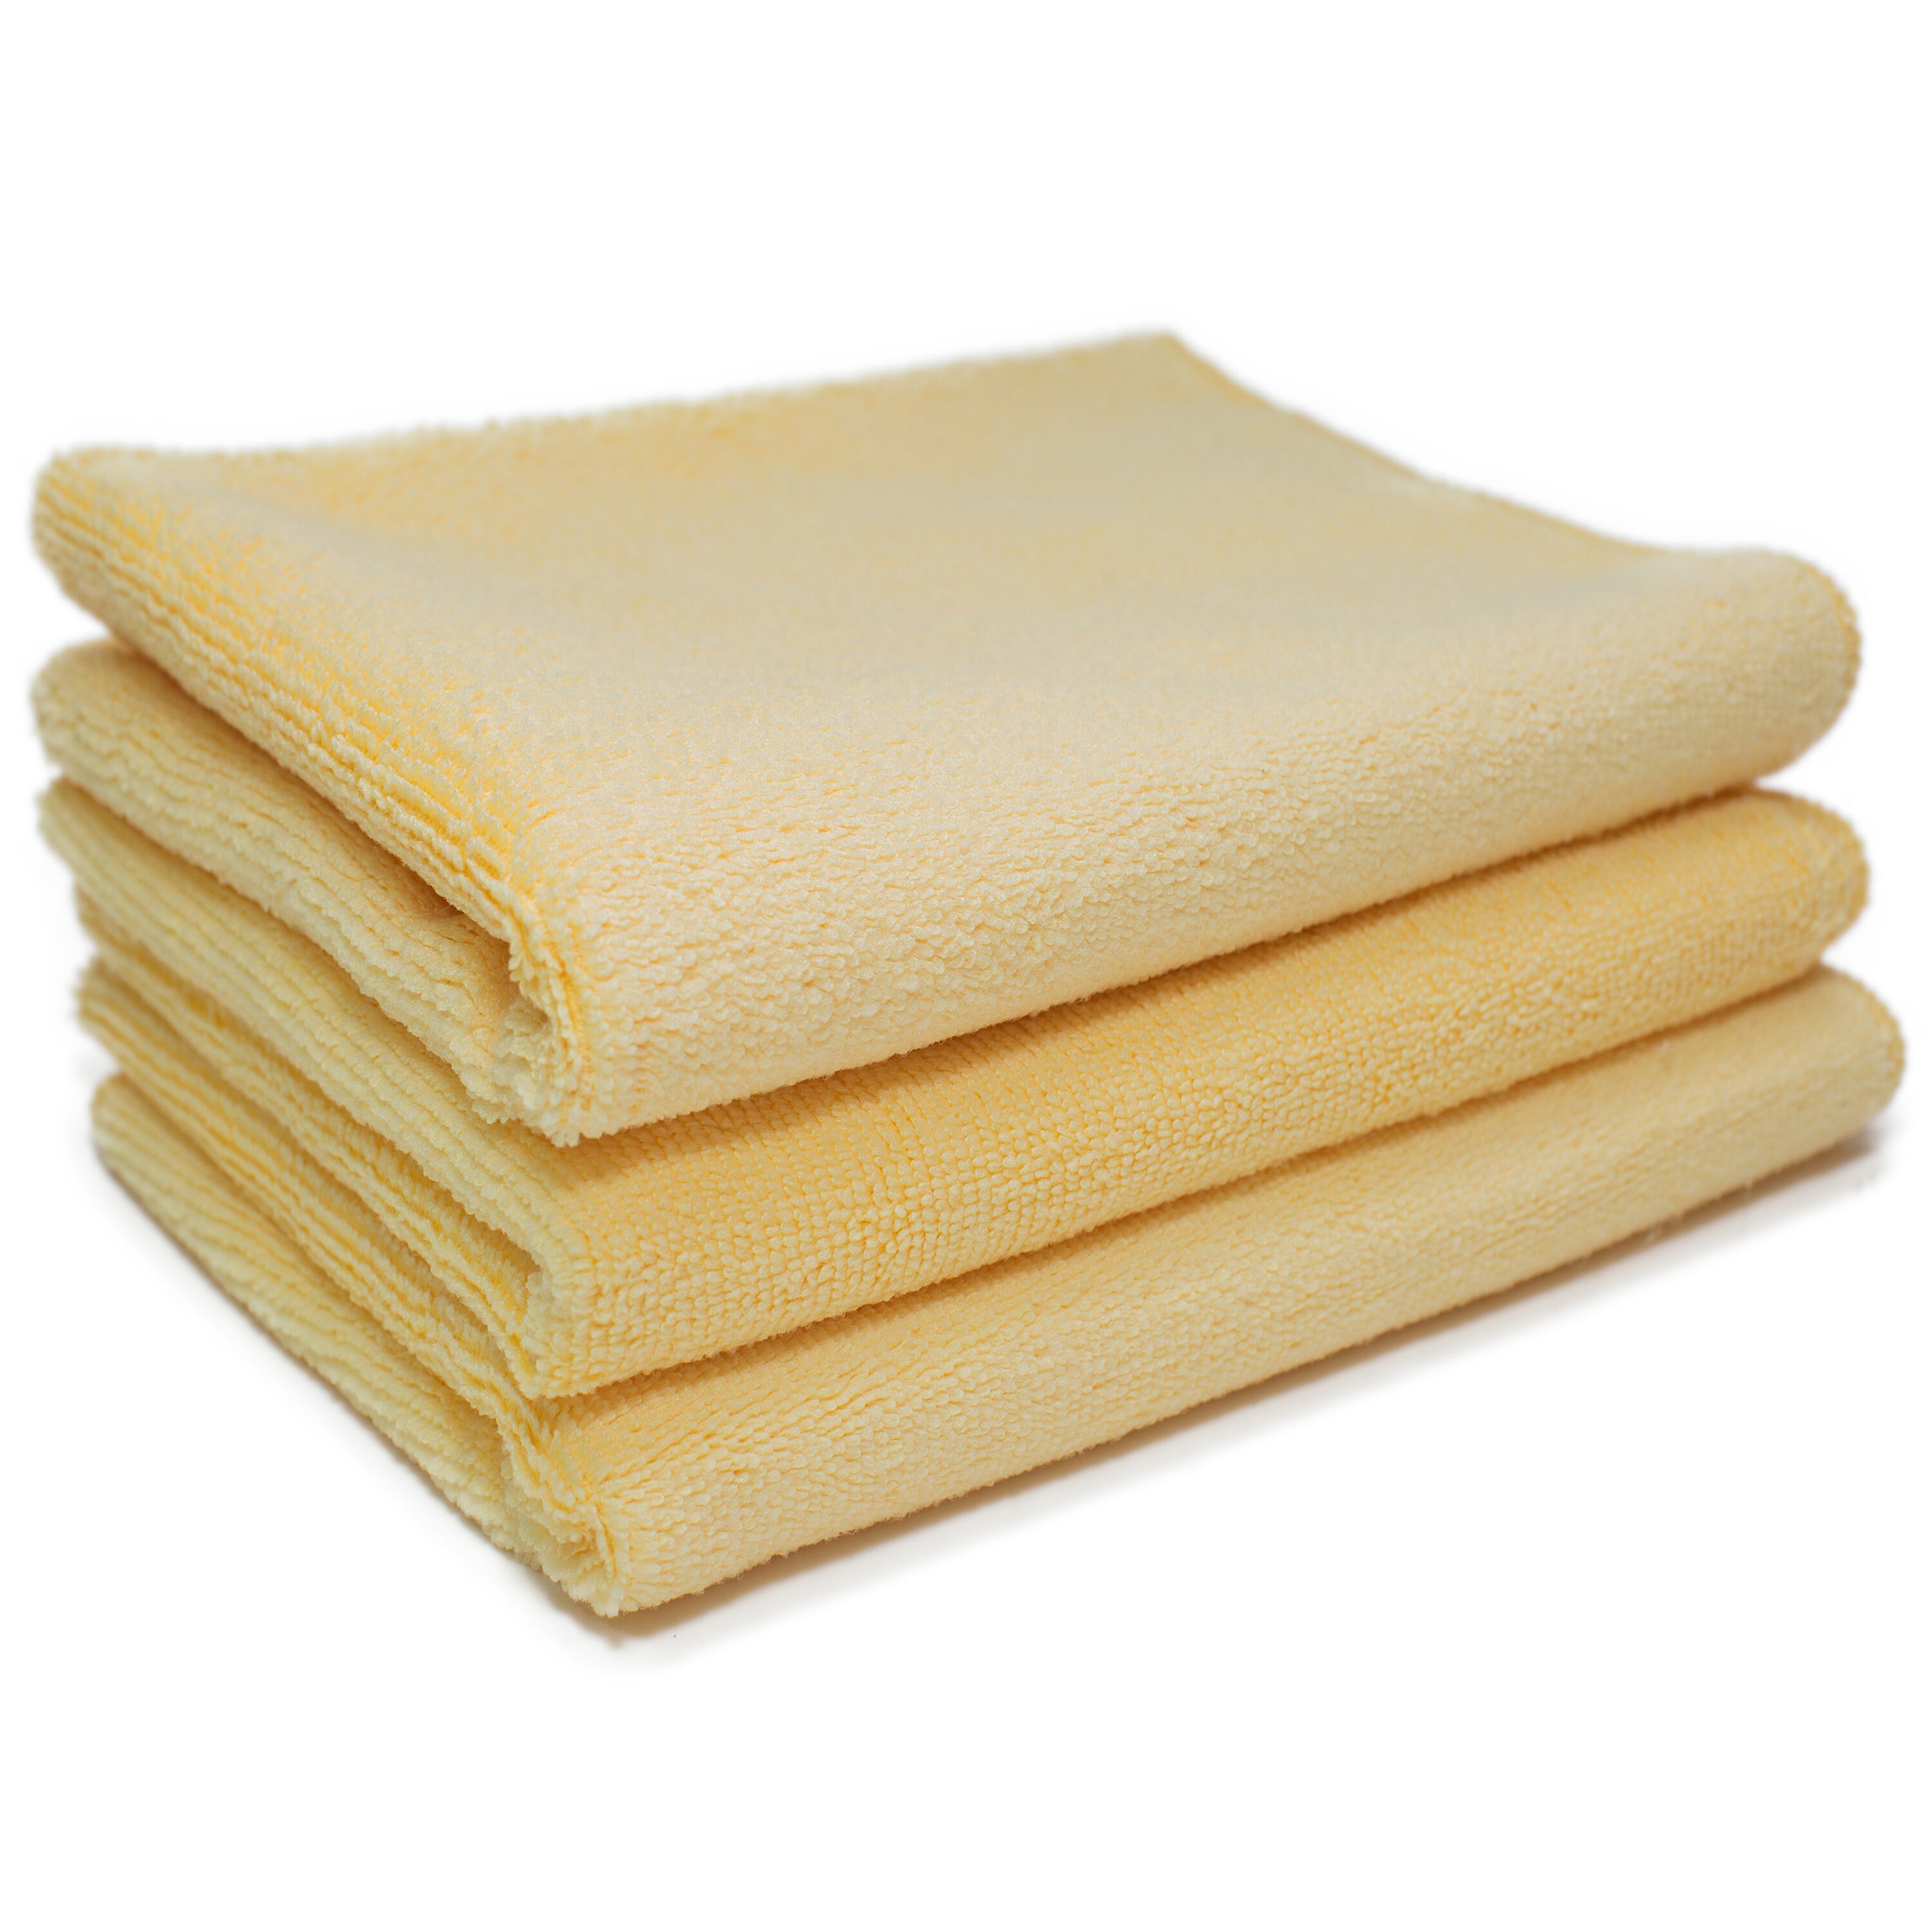 Microfiber Towels with Belt Loop (3 Pack)